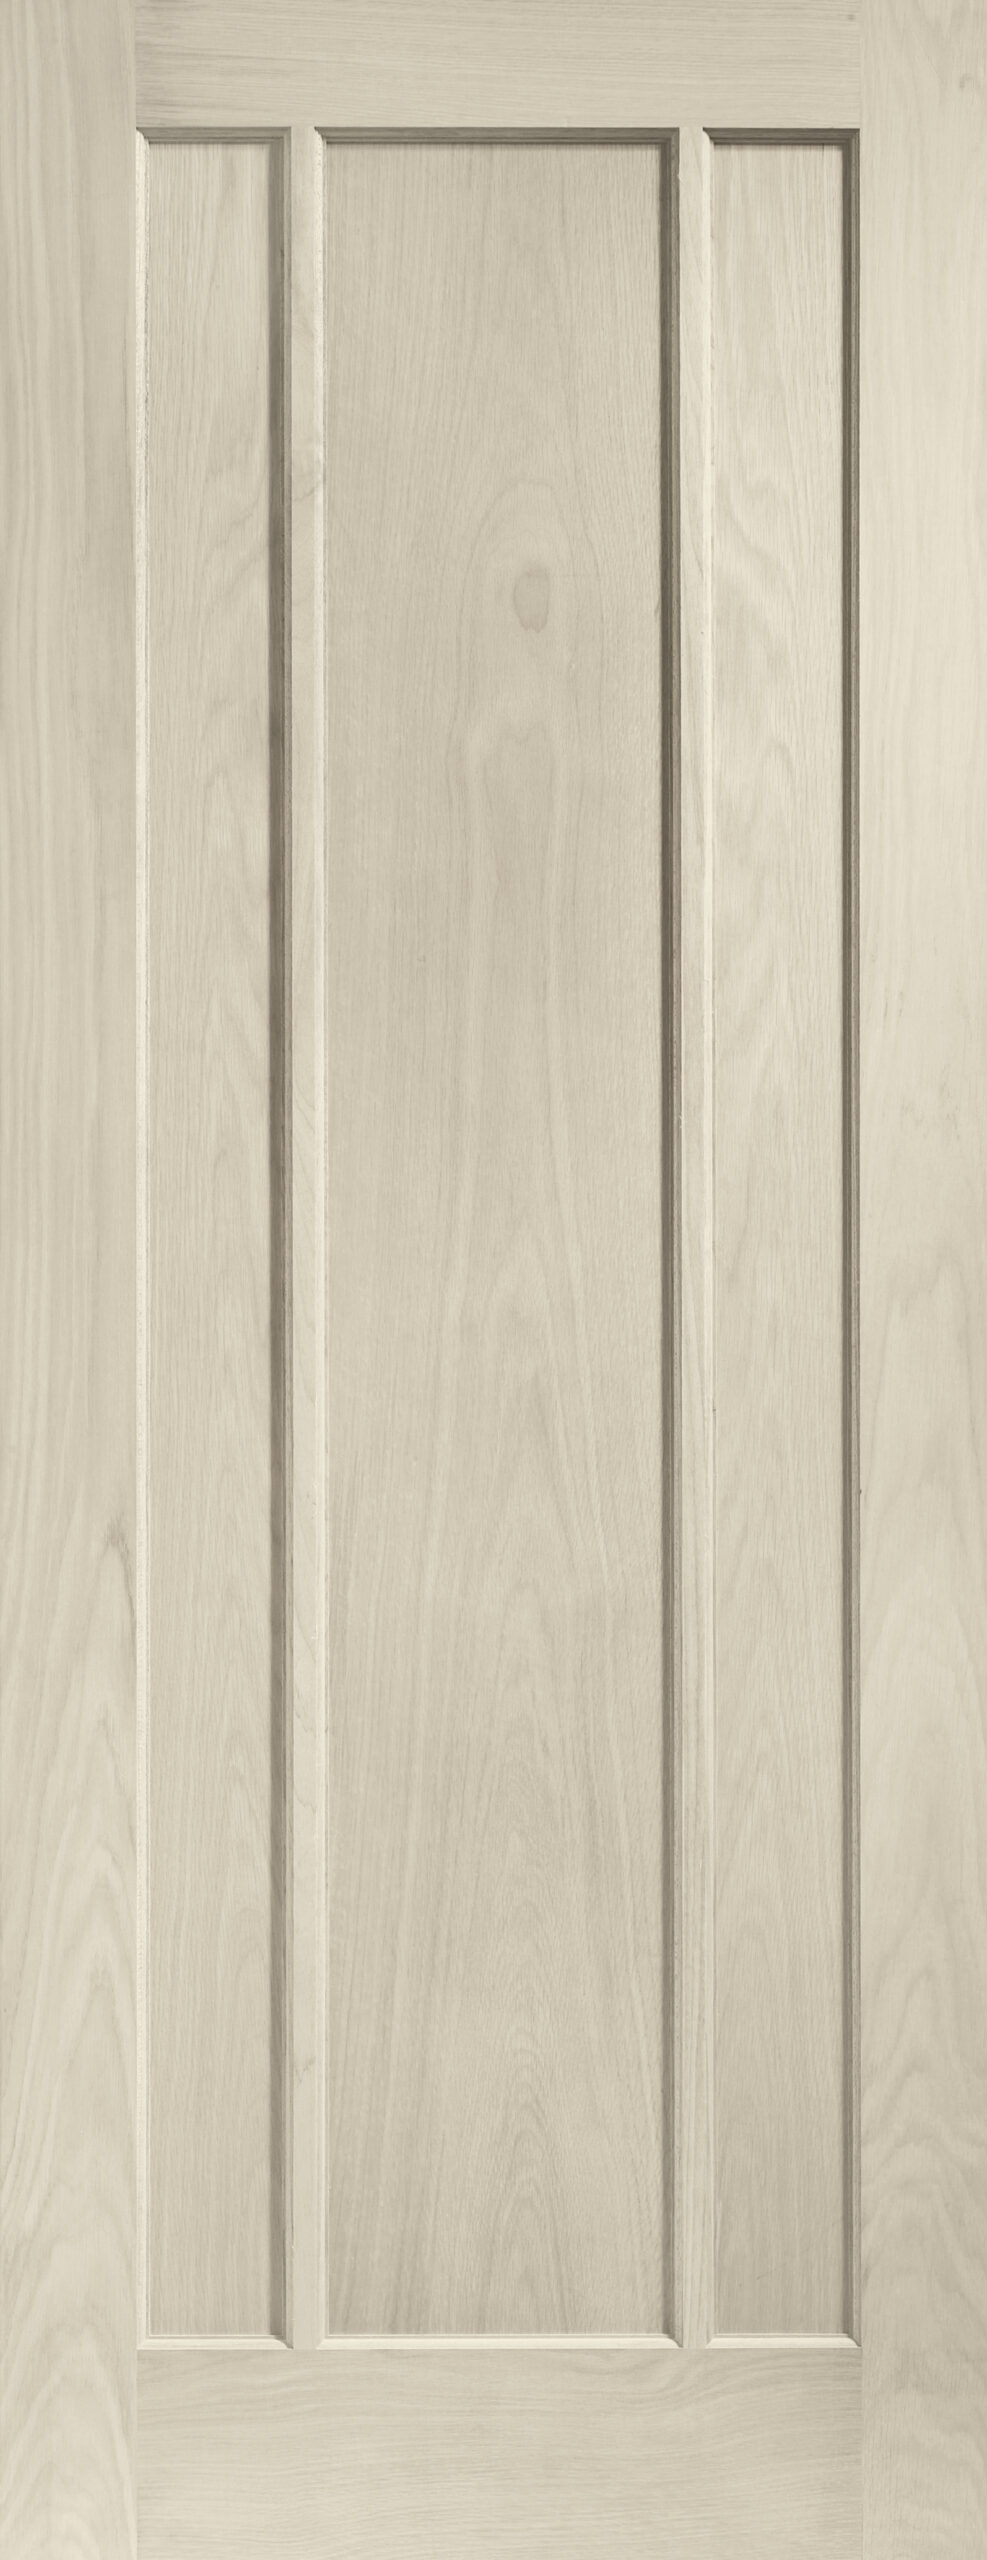 Worcester Internal Oak Door – Blanco, 2040 x 626 x 40 mm